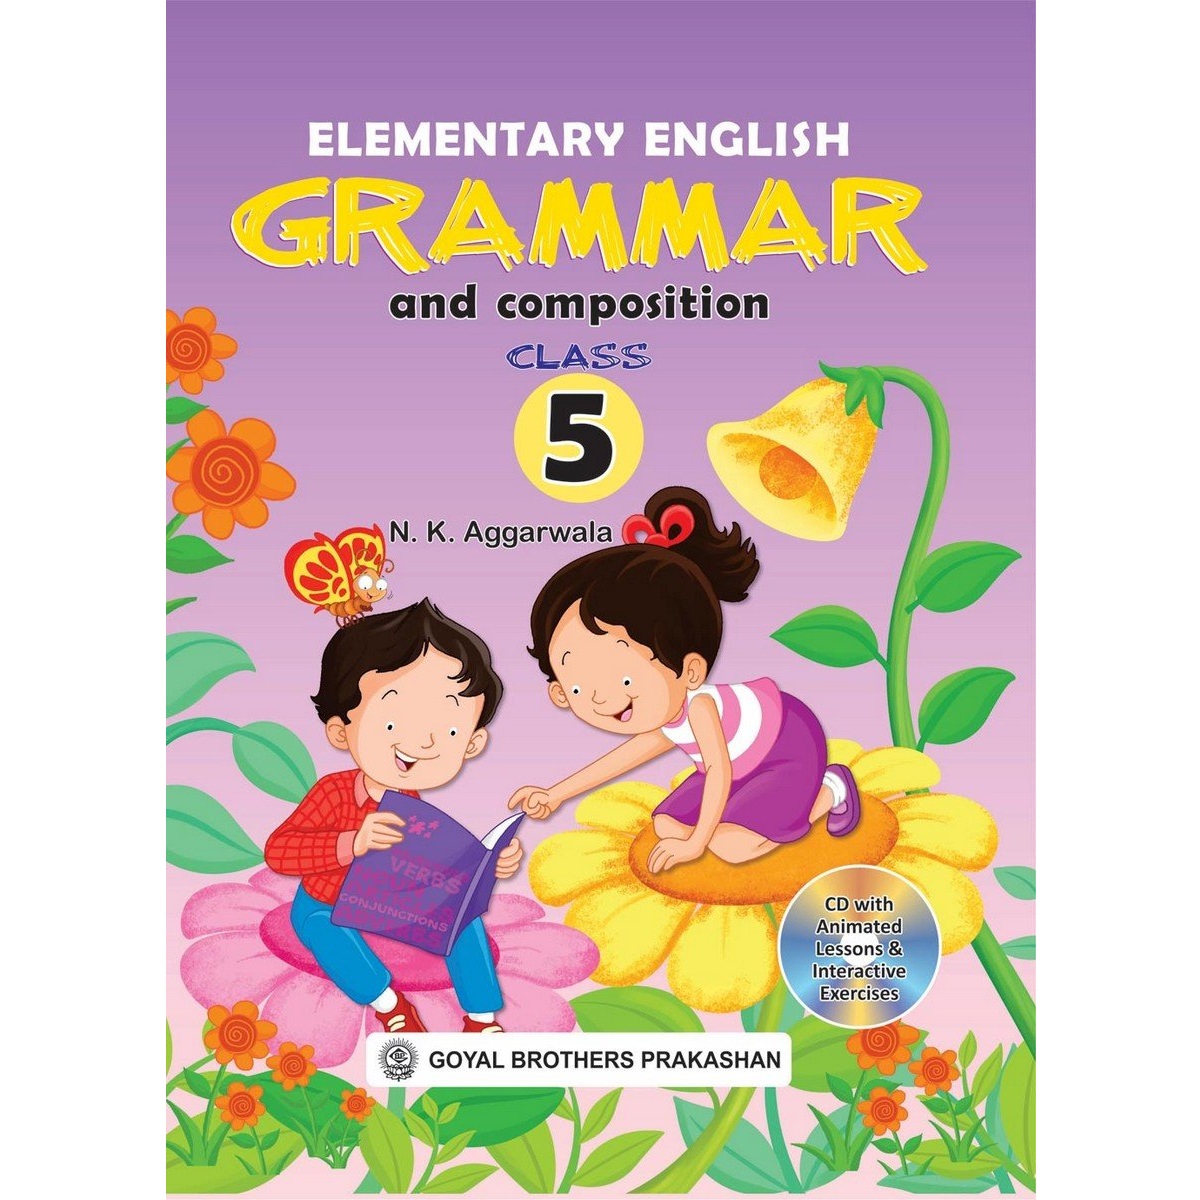 Английский язык 5 класс elementary. Elementary English Grammar. Английский Elementary. Инглиш элементари. Книги English Elementary.